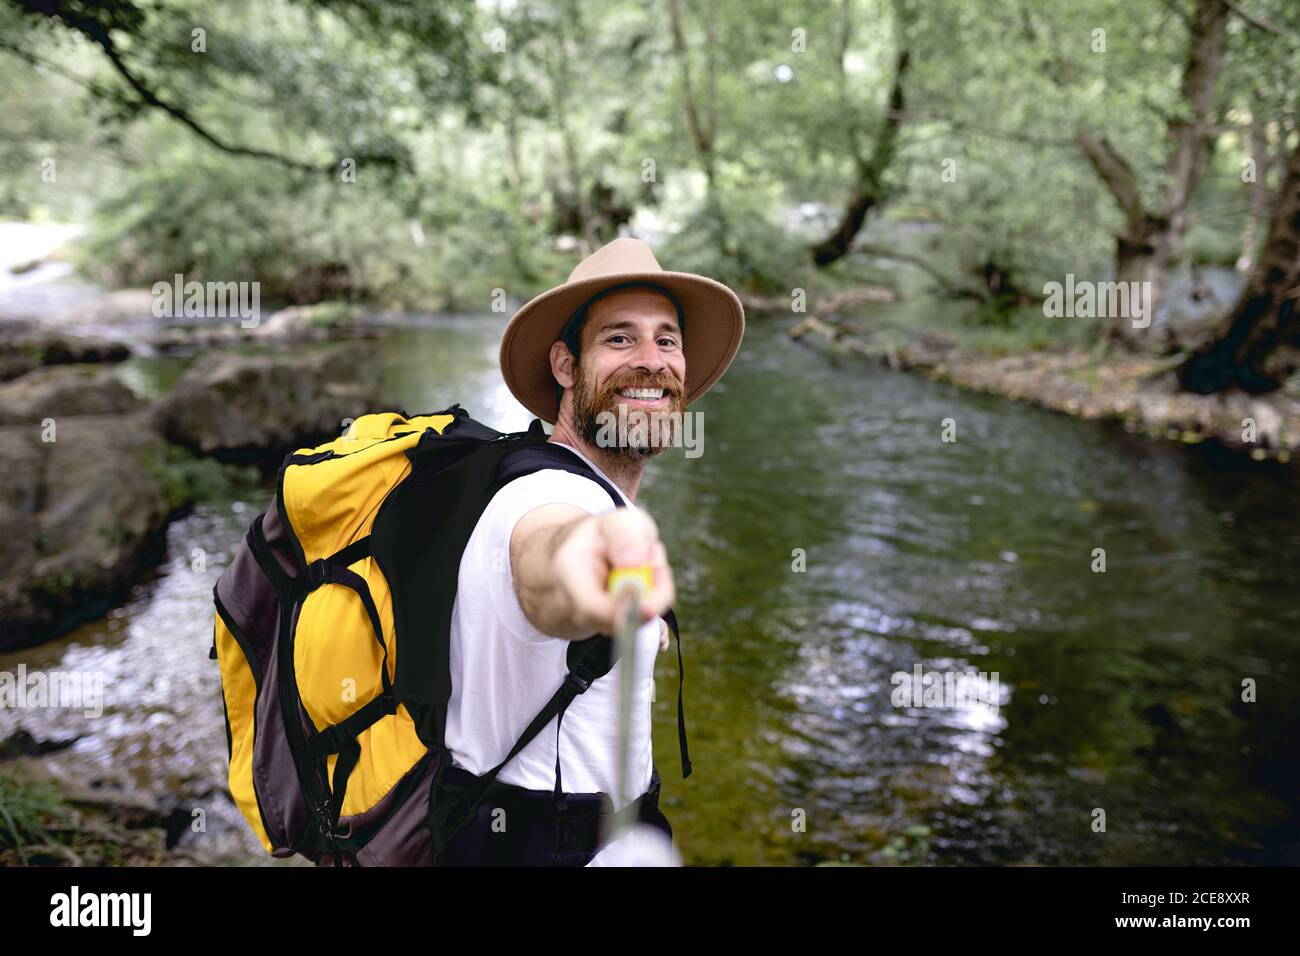 Junger Mann mit Barthut auf dem Kopf und gelb Rucksack Wandern auf einer Seenroute mit Bäumen und schattig Bereiche, die ein Selfie machen Stockfoto